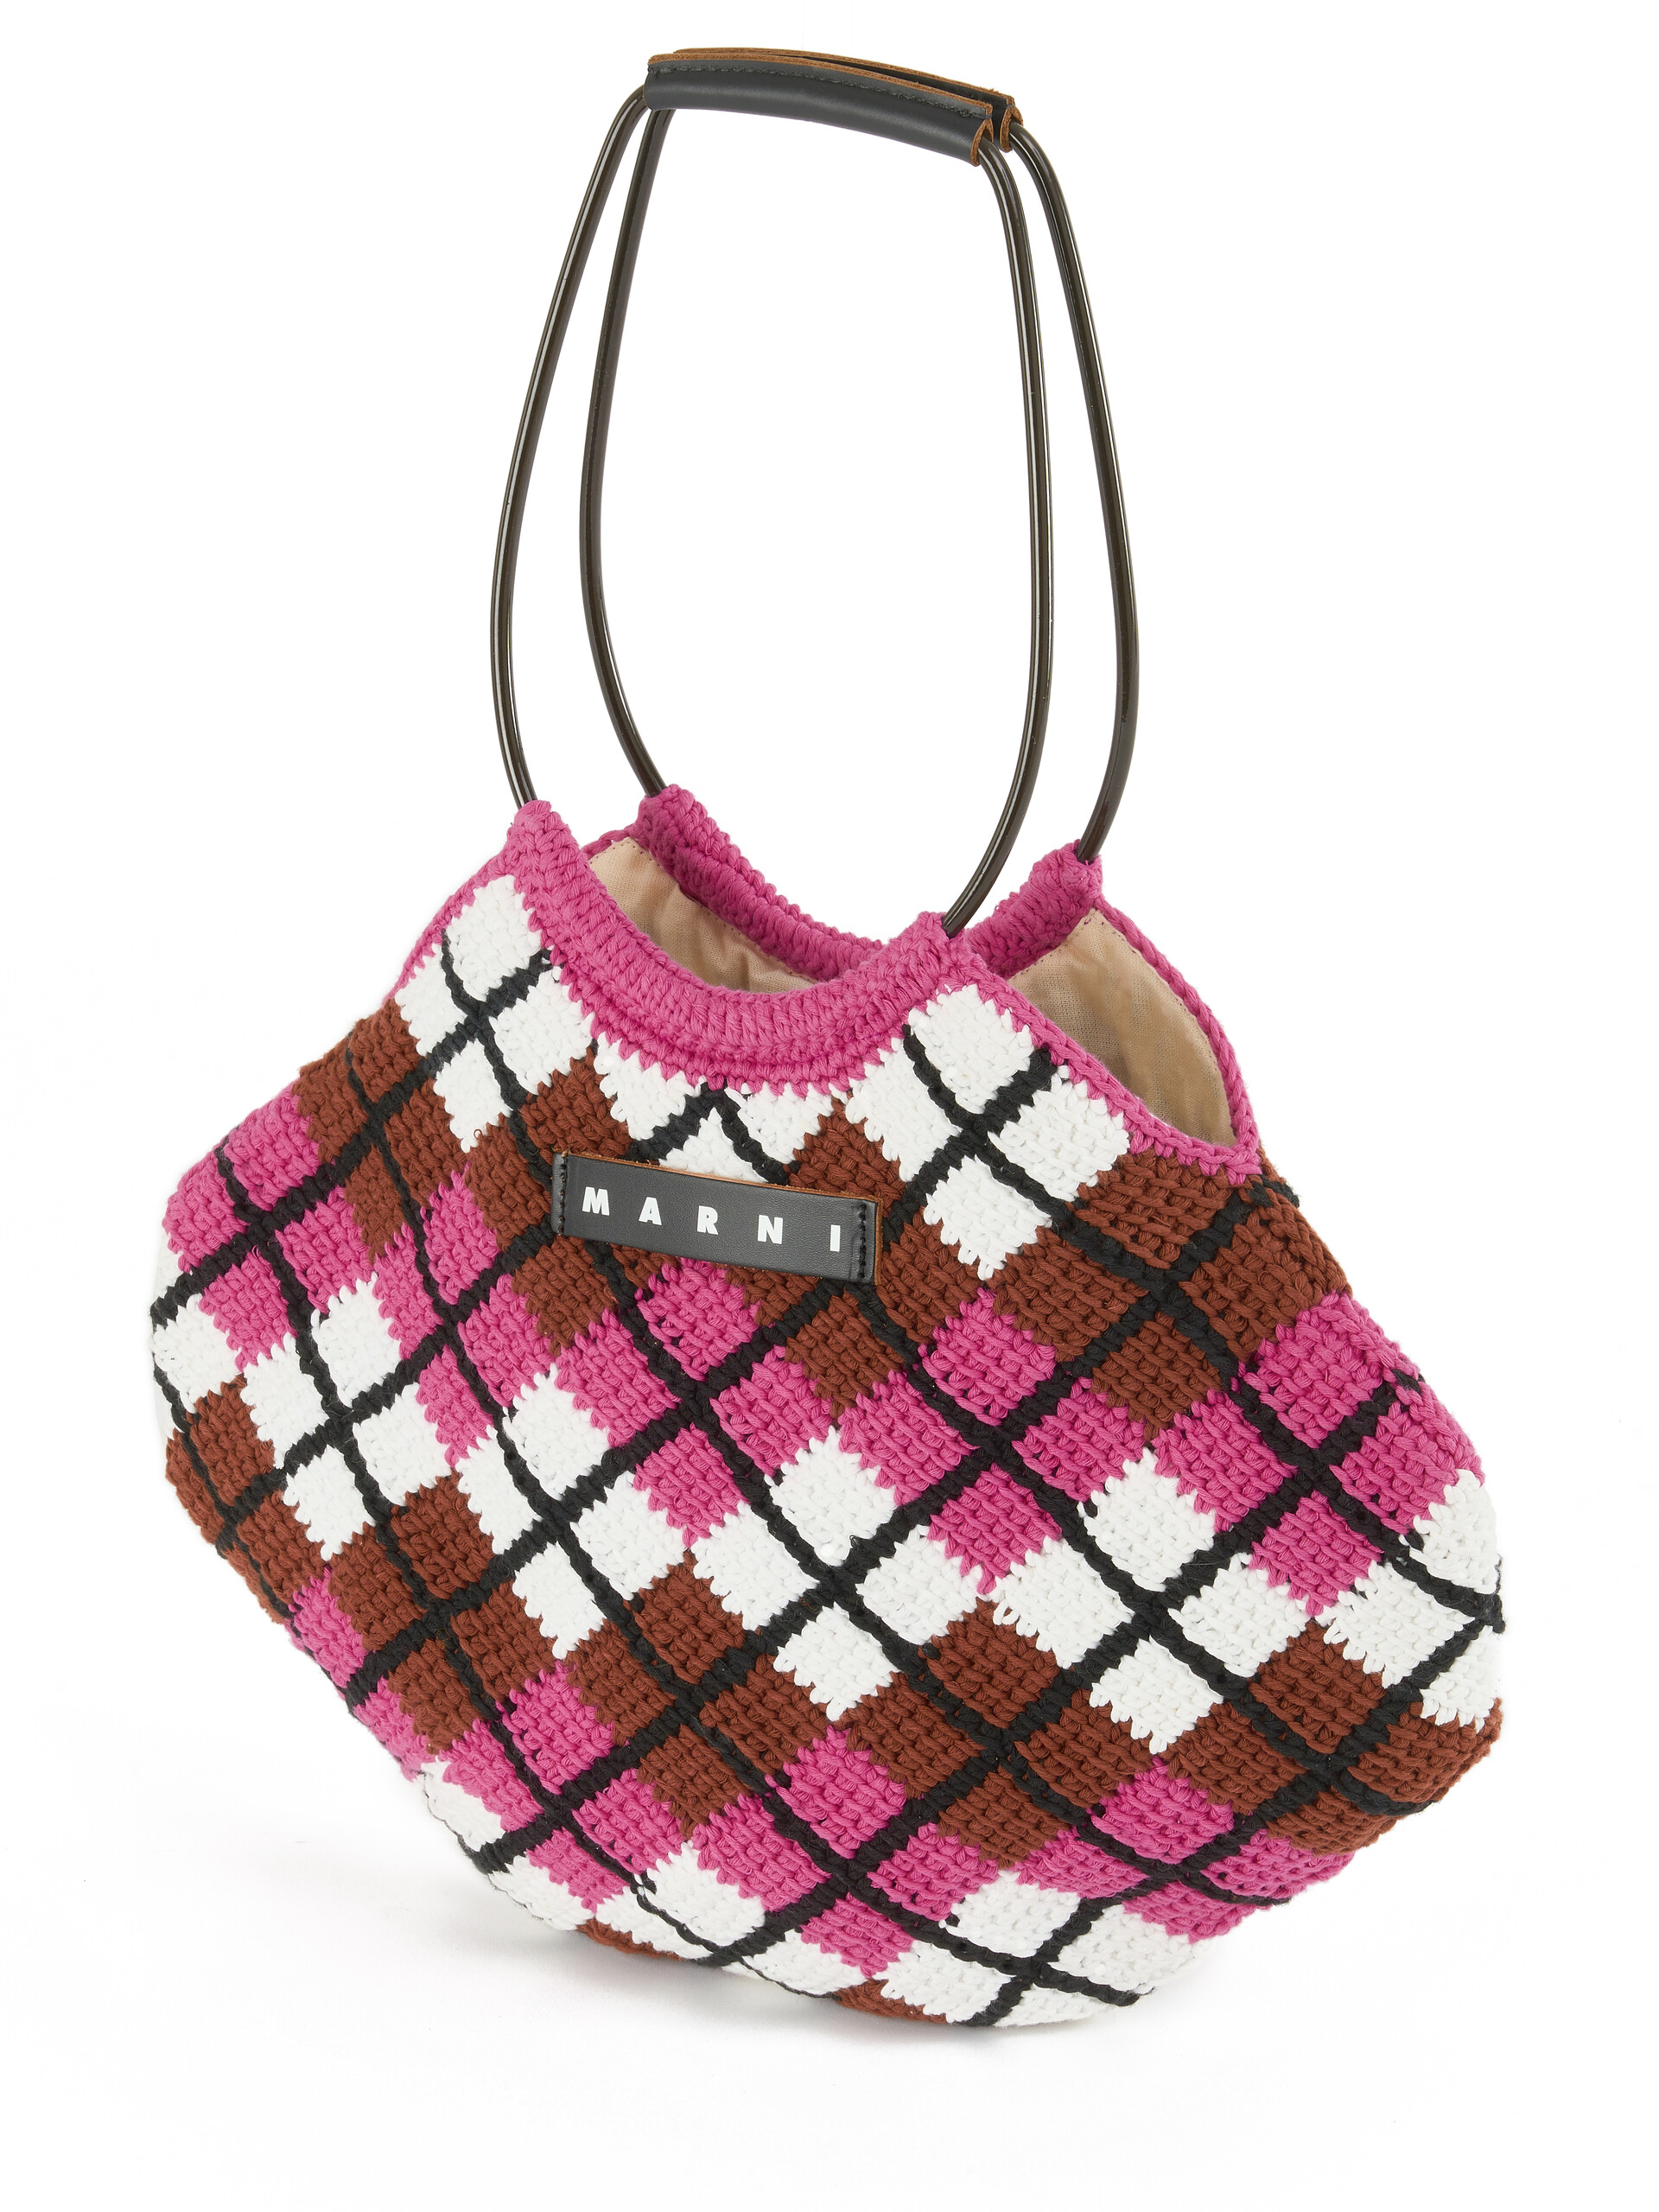 Bolso de mano MARNI MARKET de punto de algodón con rombos rosas - Bolsos shopper - Image 4